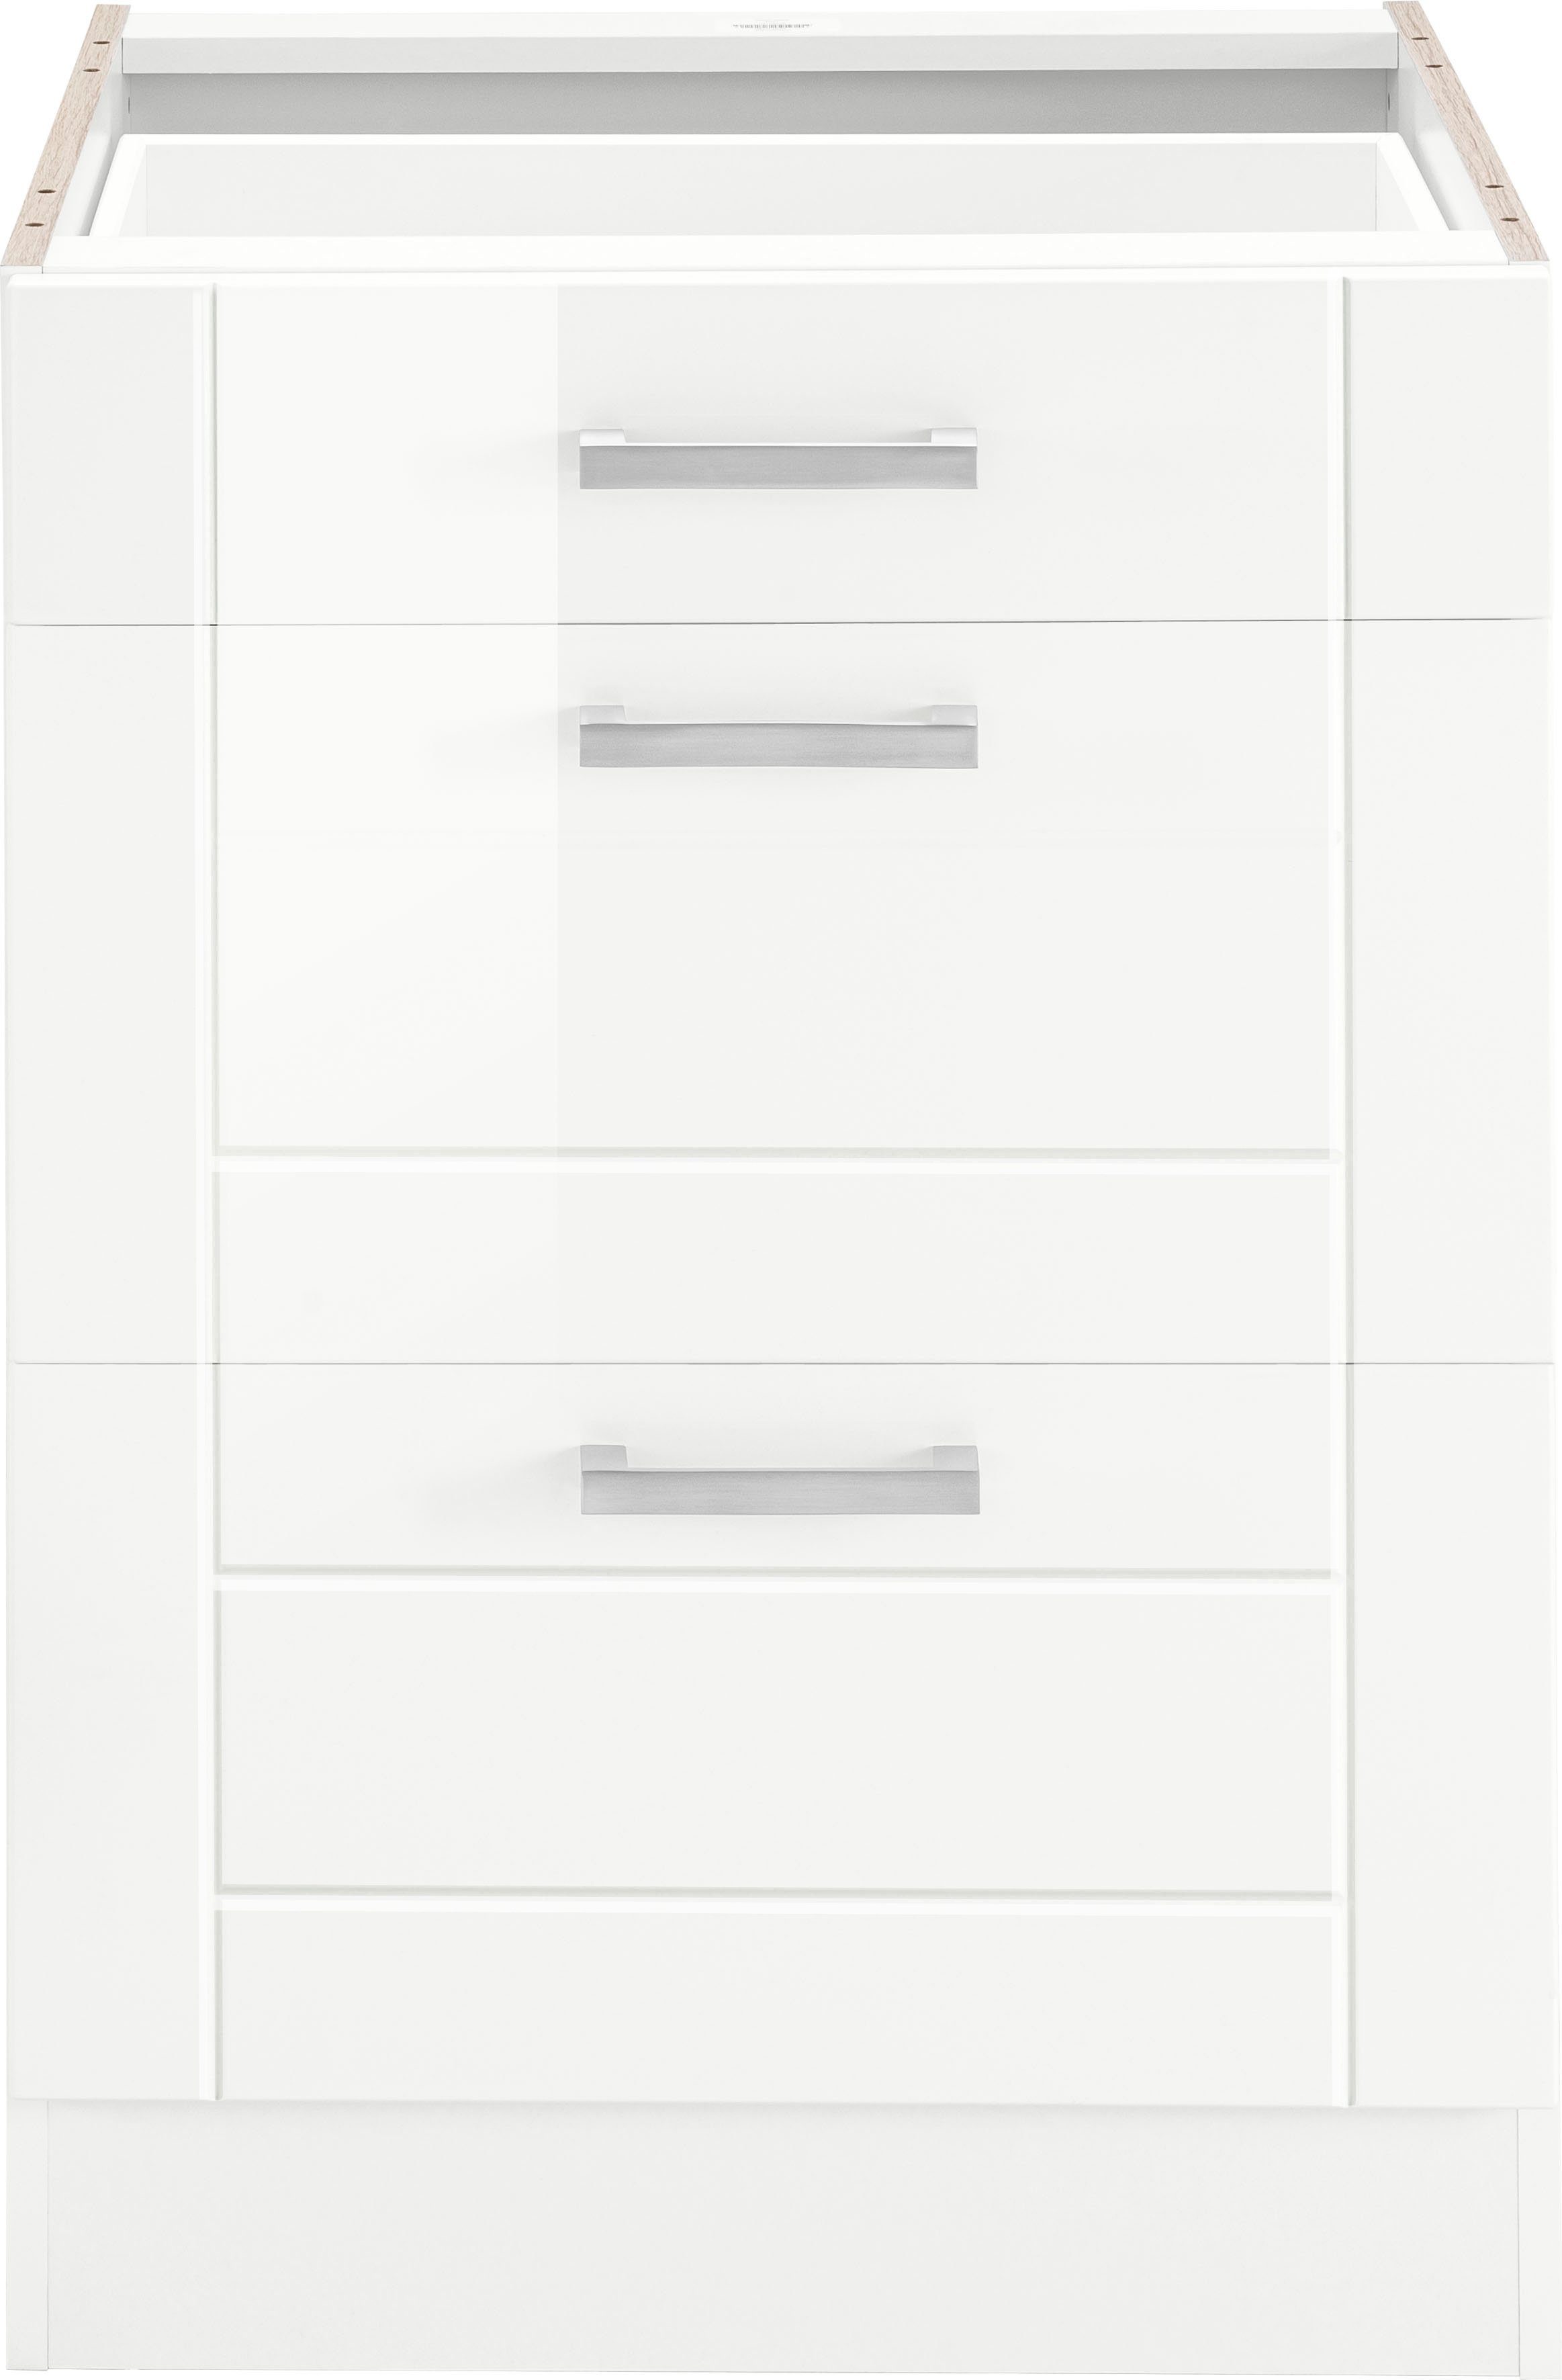 HELD MÖBEL Auszugsunterschrank Tinnum 60 cm breit, MDF-Fronten, Metallgriff, 1 Schubkasten, 2 Auszüge weiß | weiß | Unterschränke